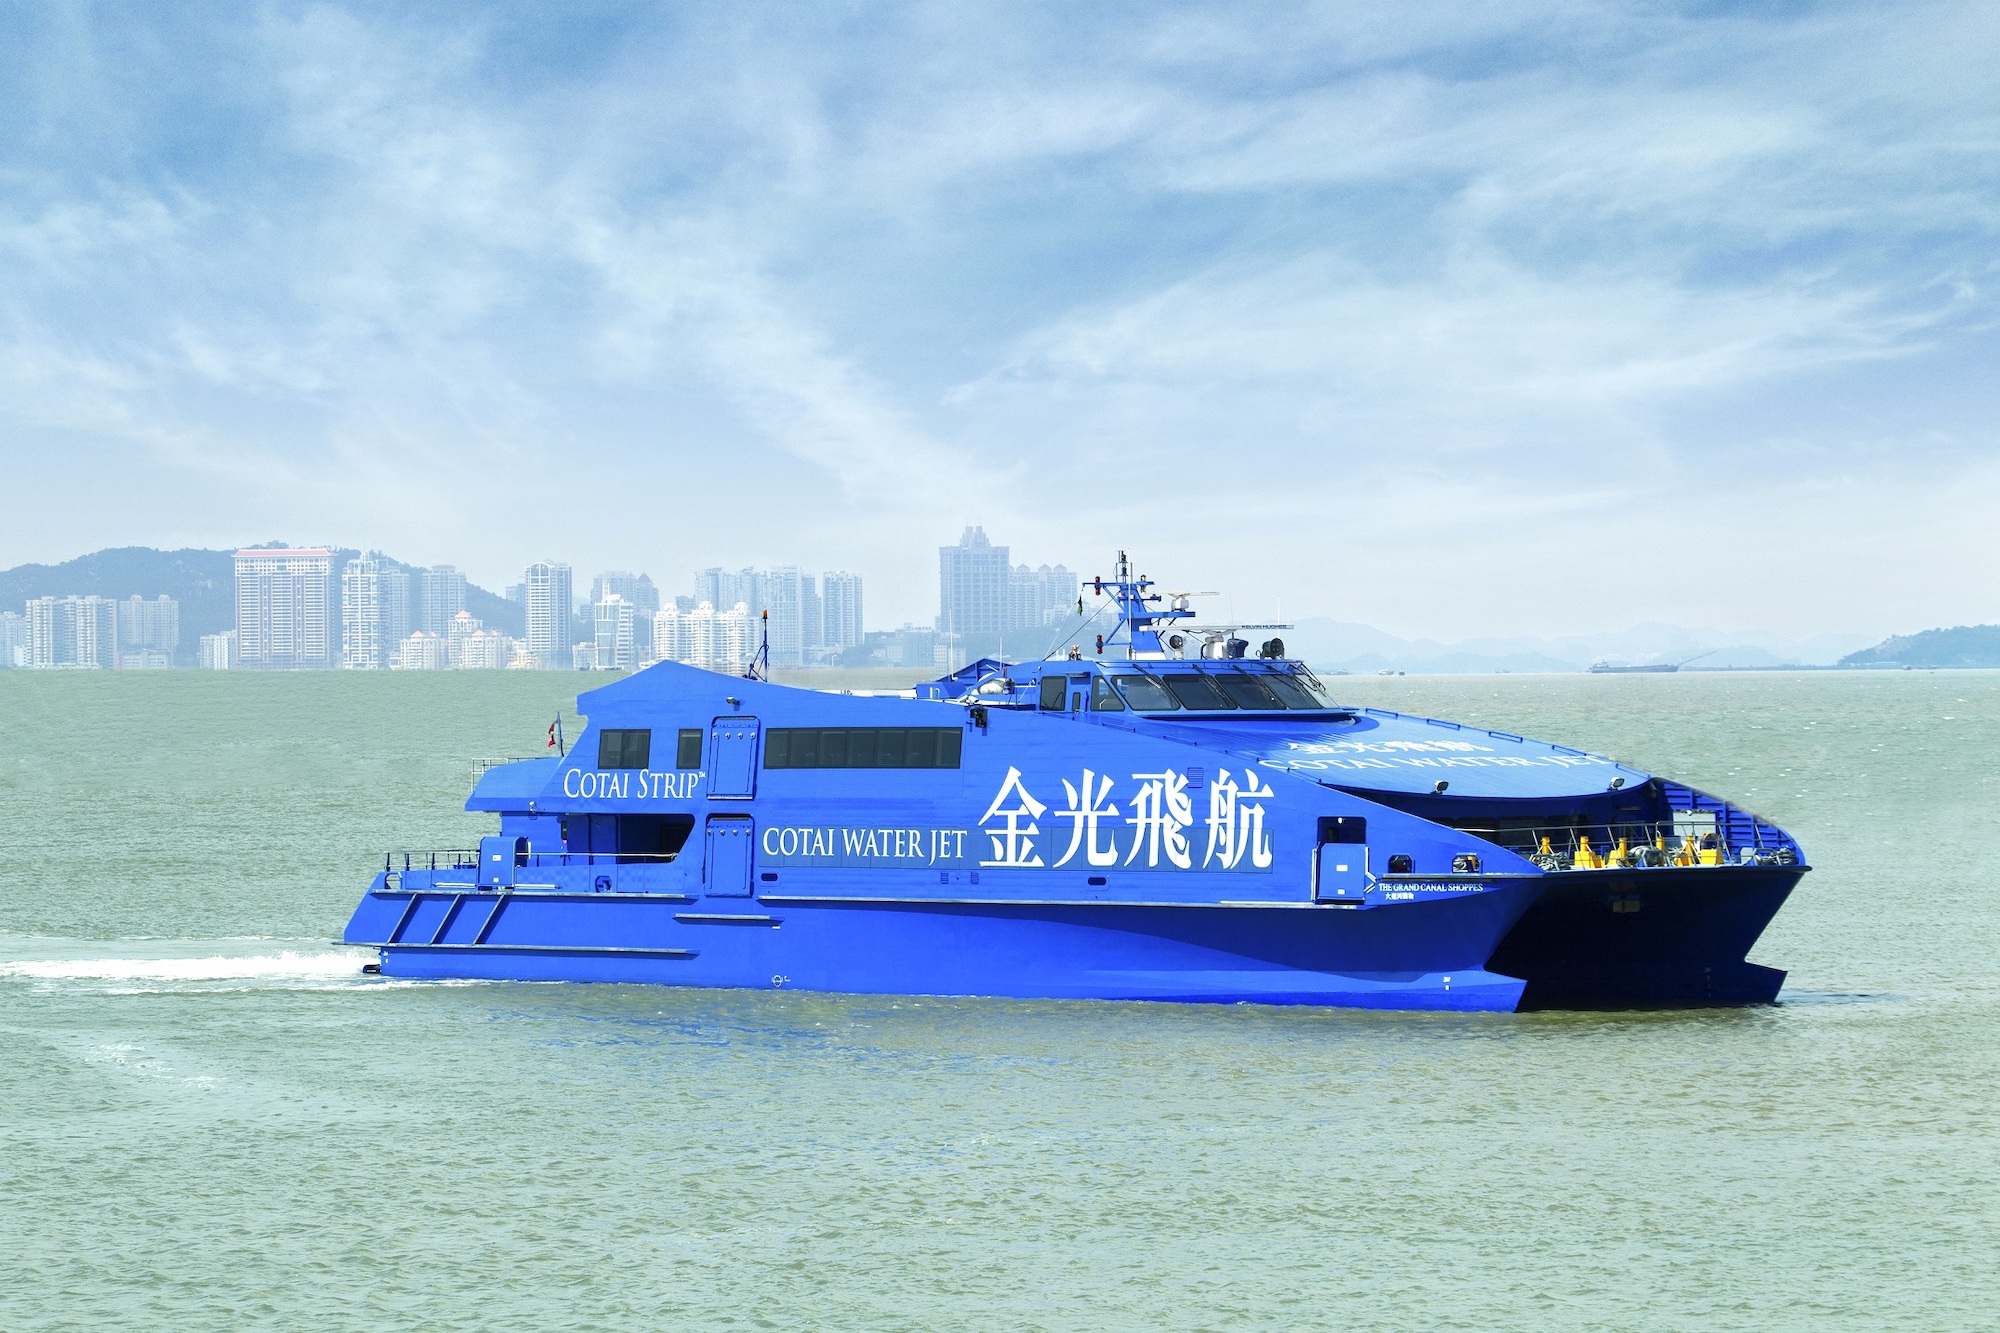 Macao-Hong Kong ferries start on Sunday